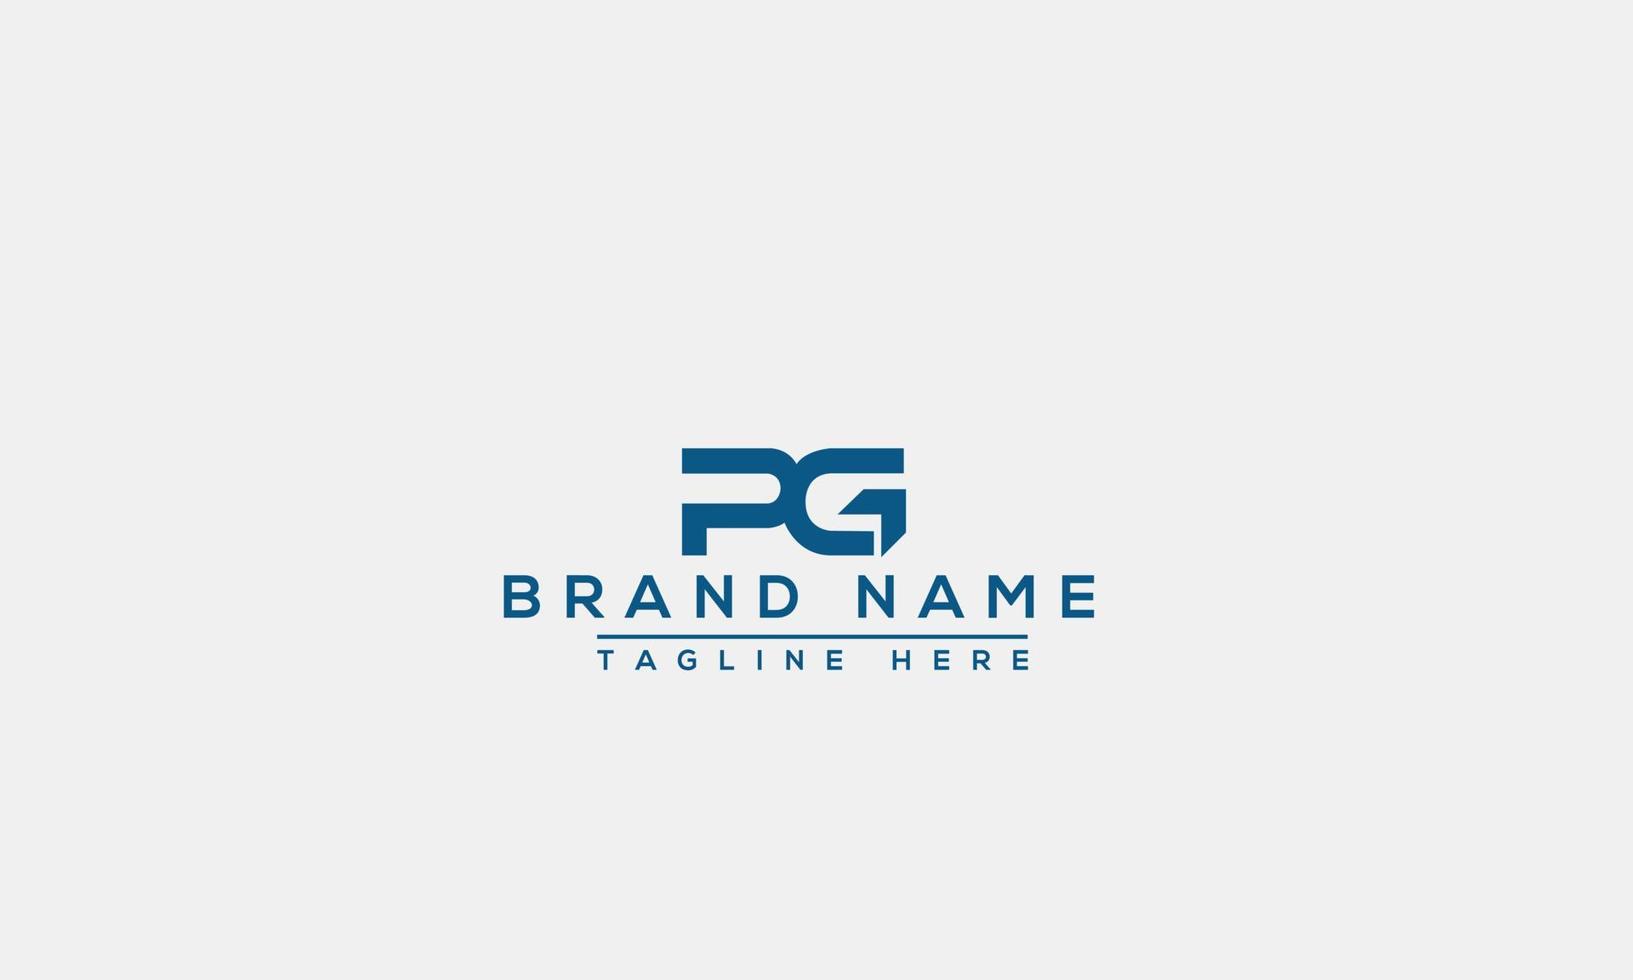 elemento de branding gráfico de vetor de modelo de design de logotipo pg.